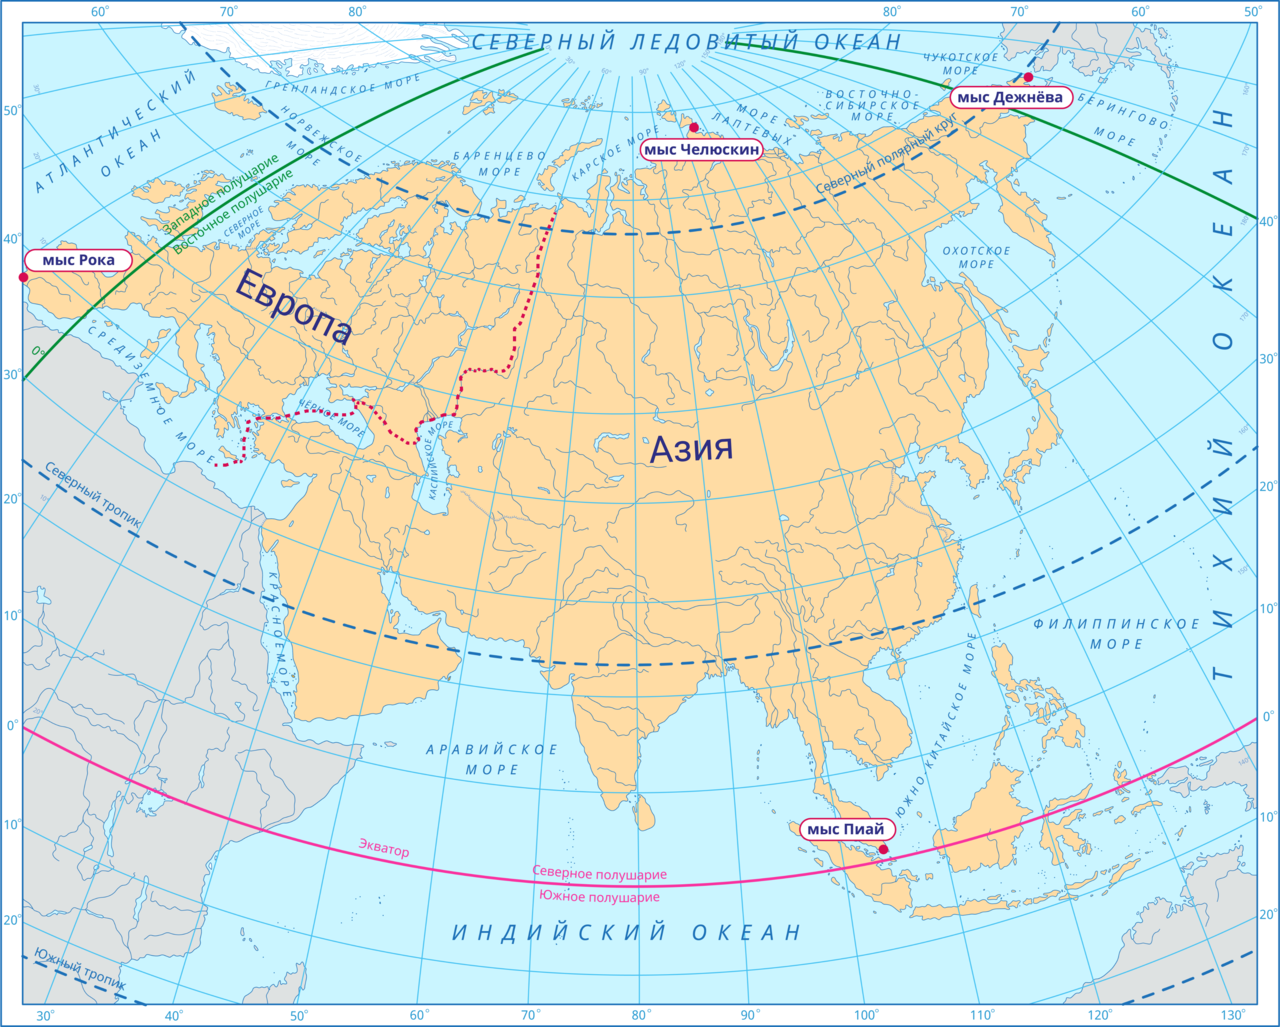 Карта Евразии. Материк Евразия на карте. Карта Евразии географическая. Начальный меридиан делит территорию евразии примерно пополам